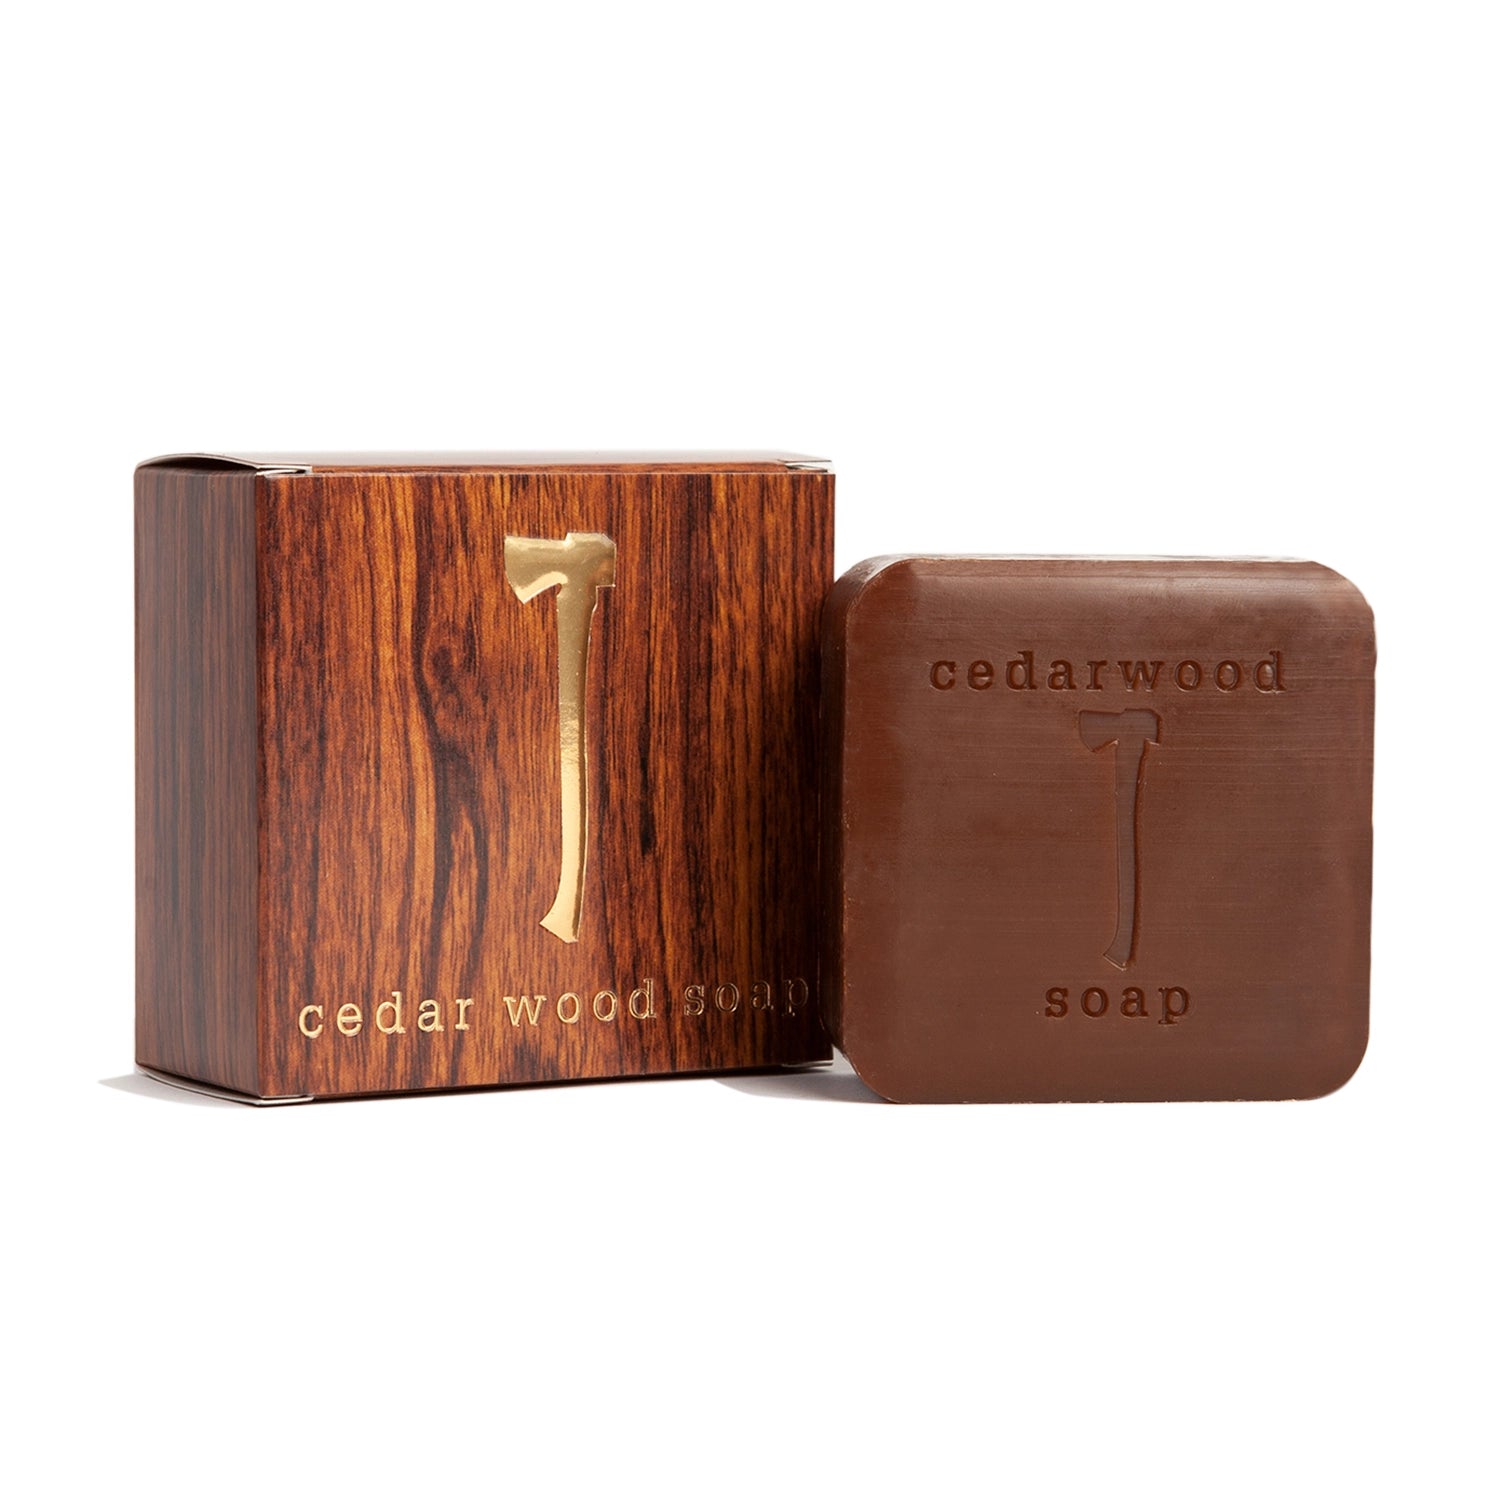 Kalastyle - Cedarwood Soap